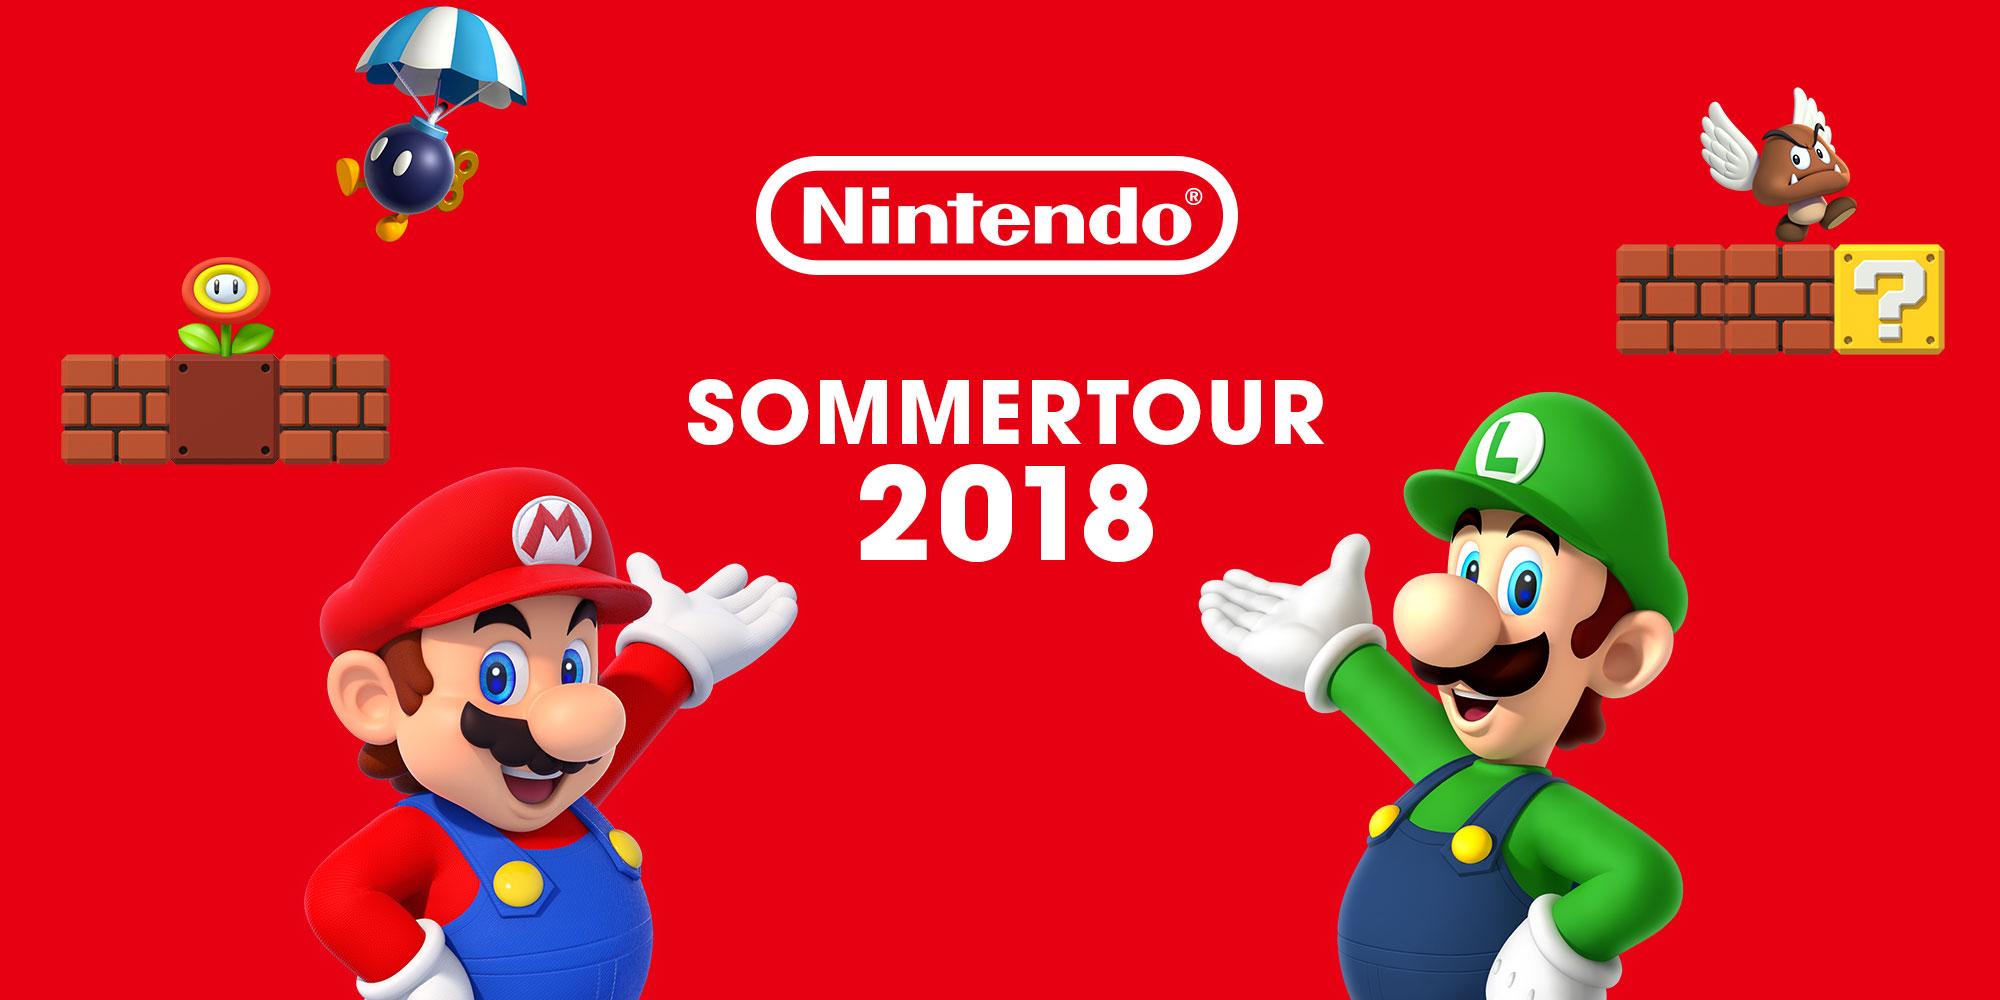 Nintendo_SommerTour2018_2000x1000.jpg